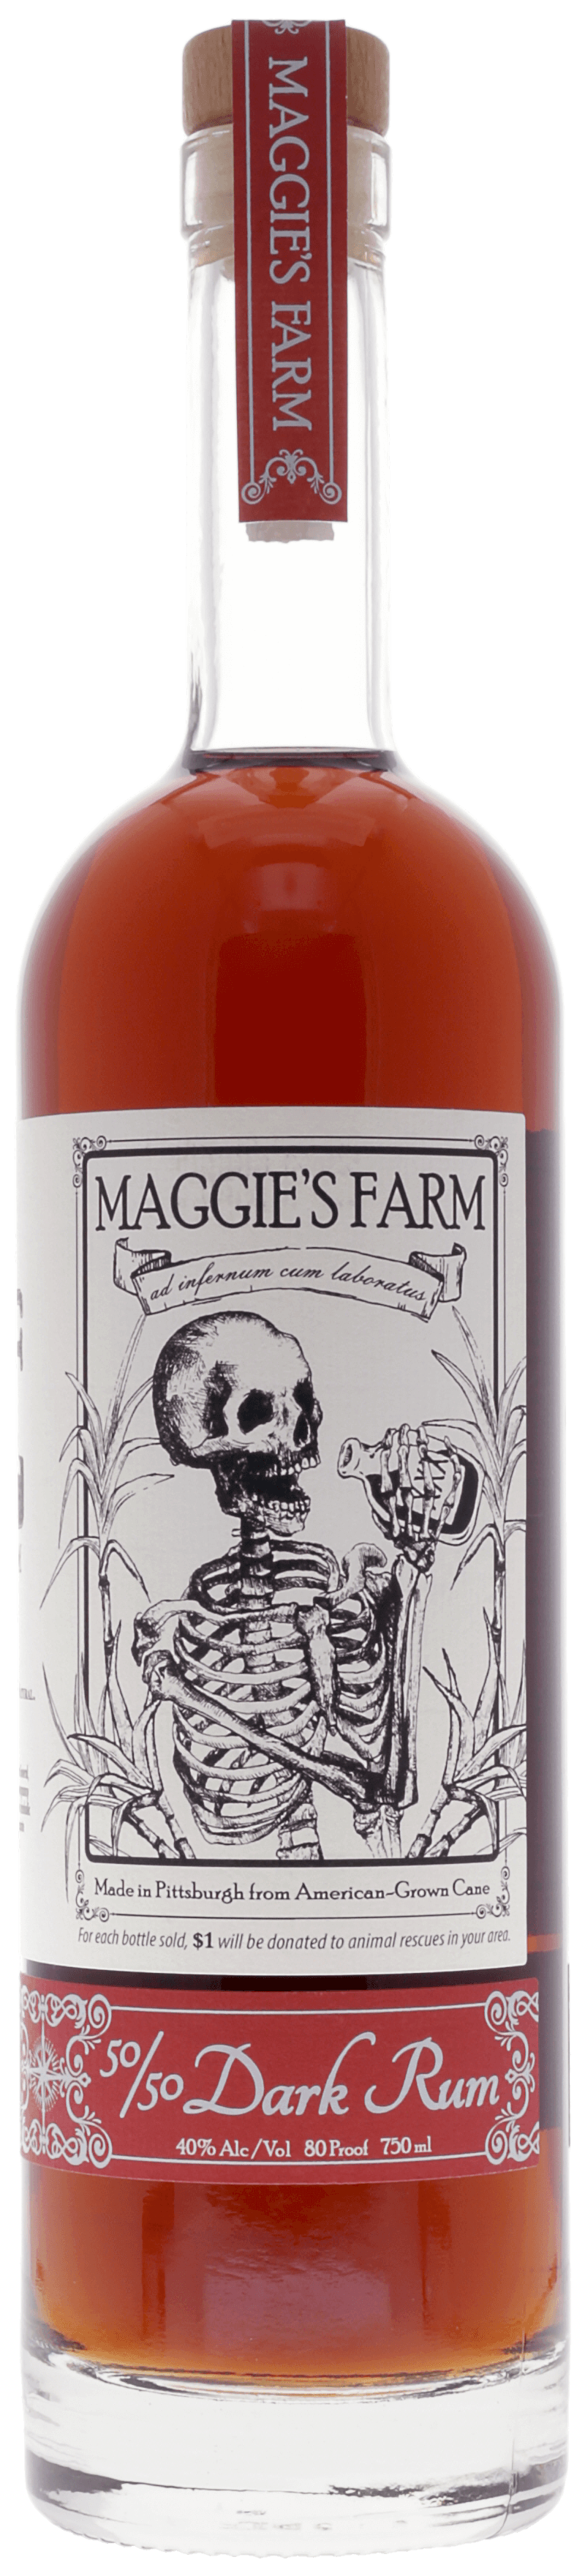 Maggie's Farm 50 50 Dark Rum